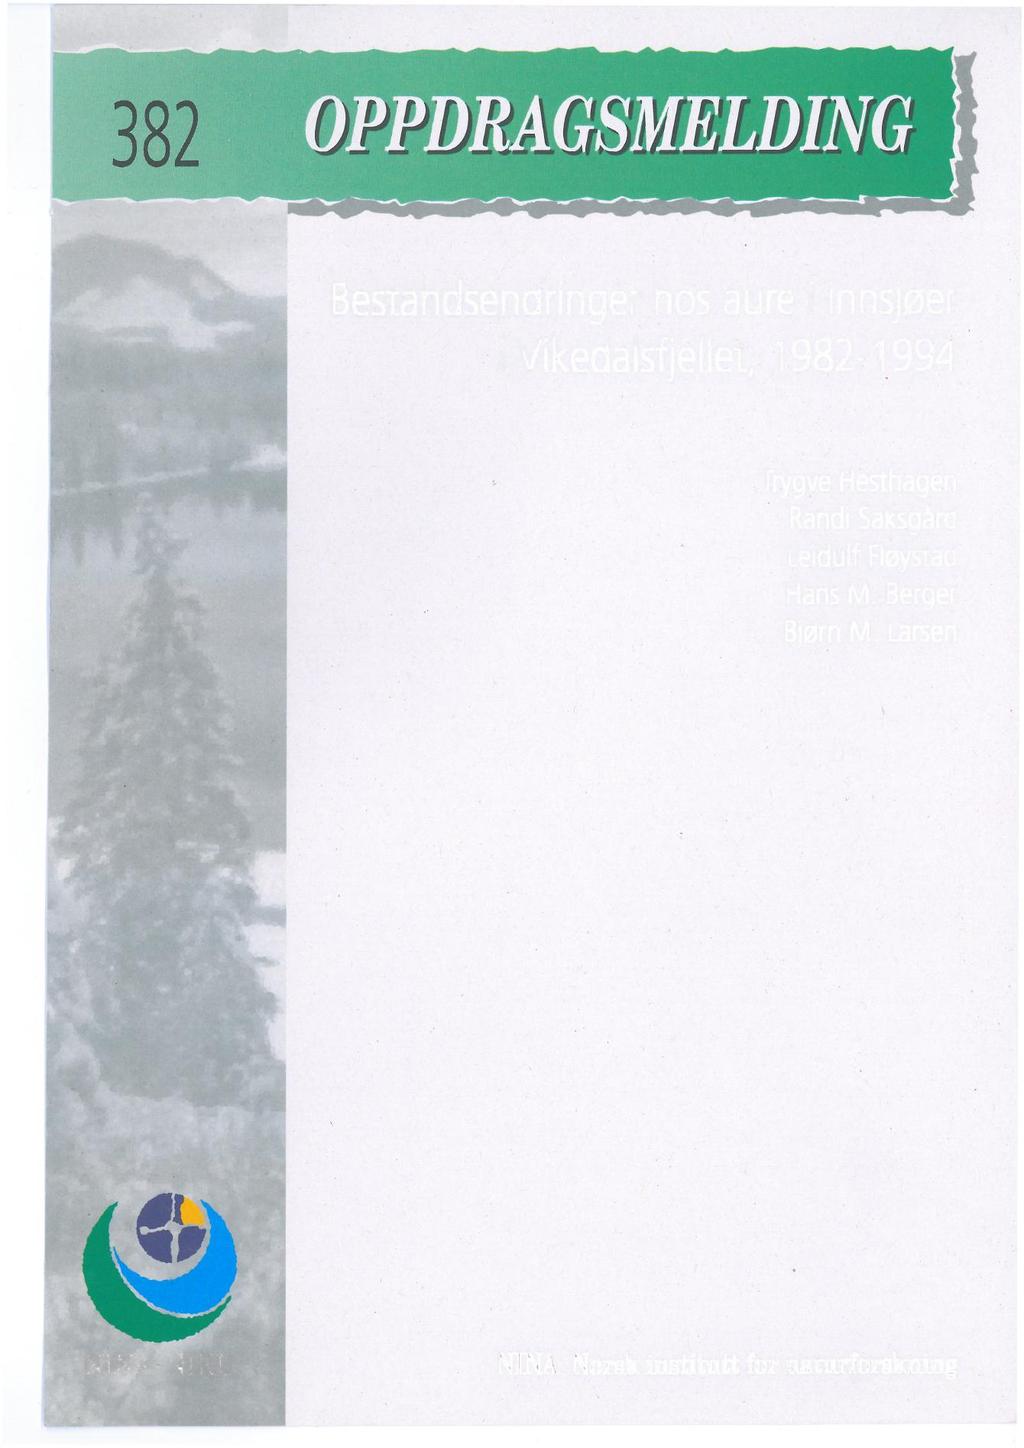 Bestandsendringer hos aure i innsjøer i Vikedalsfjellet 1982-1994 Trygve Hesthagen Randi